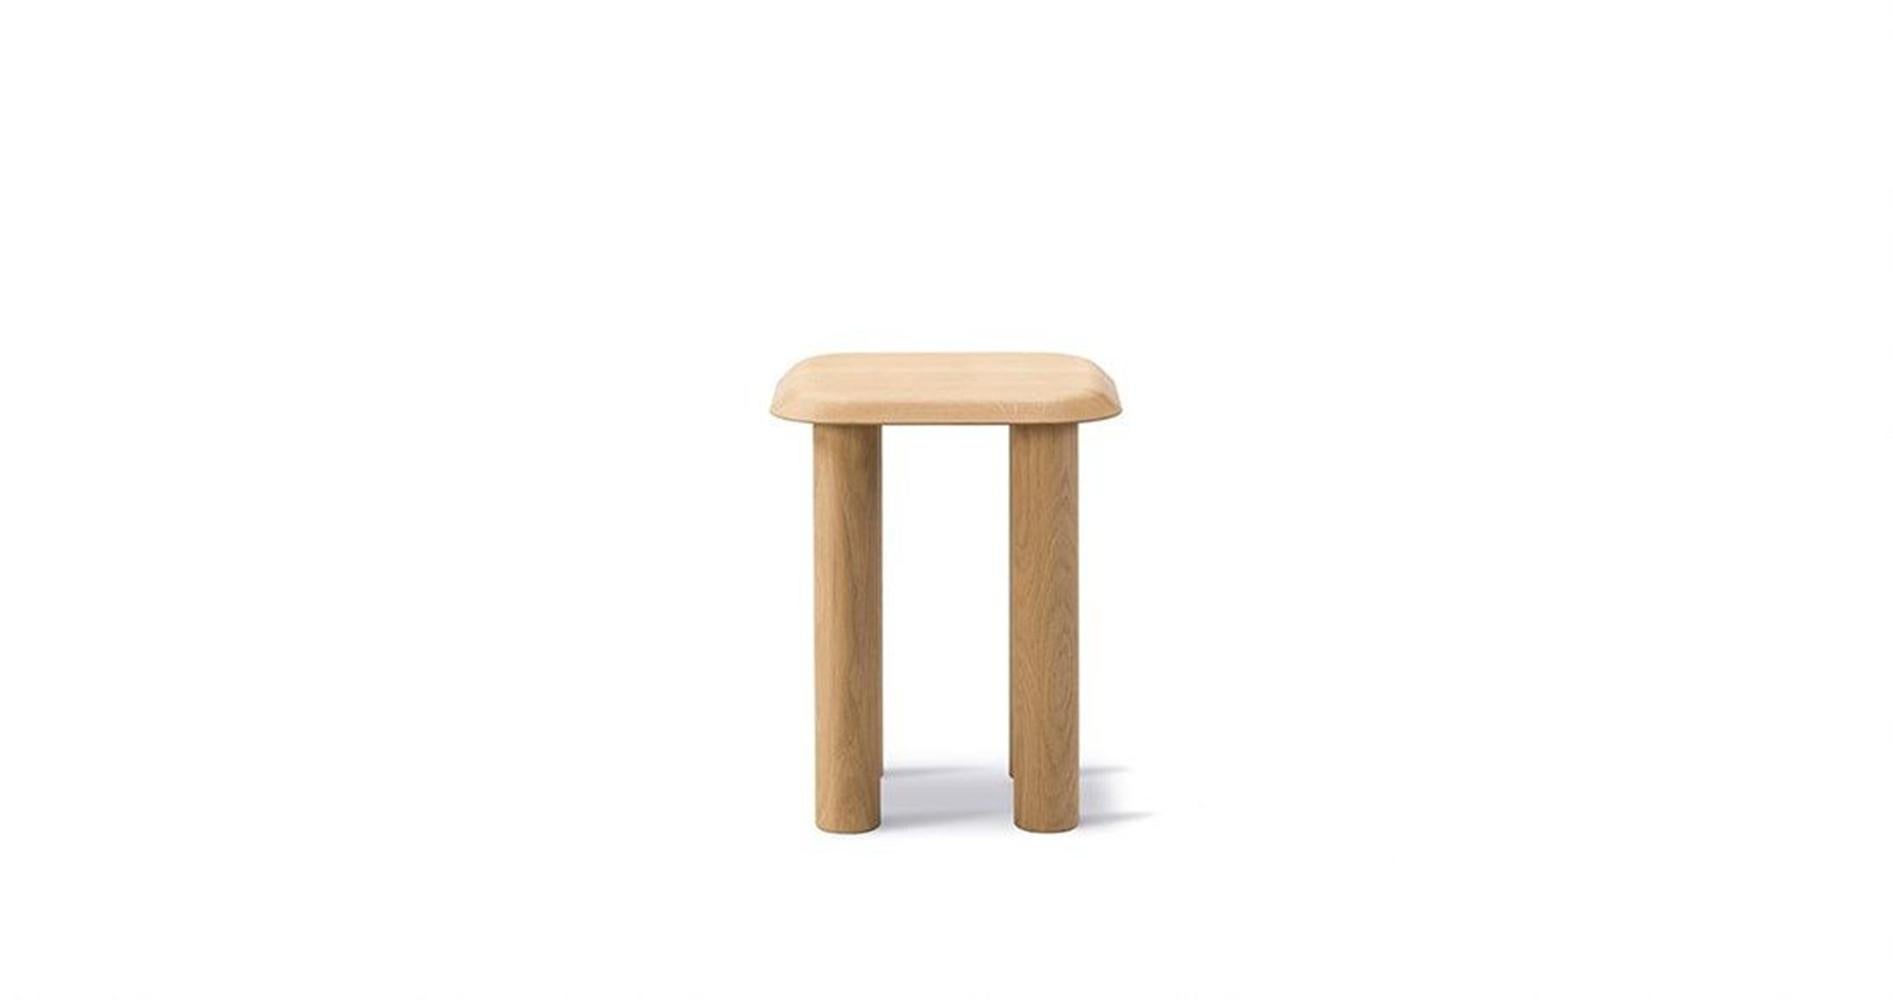 La table Islets est un design précis avec une identité forte, basée sur une construction simple, où les détails sont réduits au minimum. C'est une approche qui reflète le minimalisme sculptural de la designer danoise Maria Bruun, qui recherche un